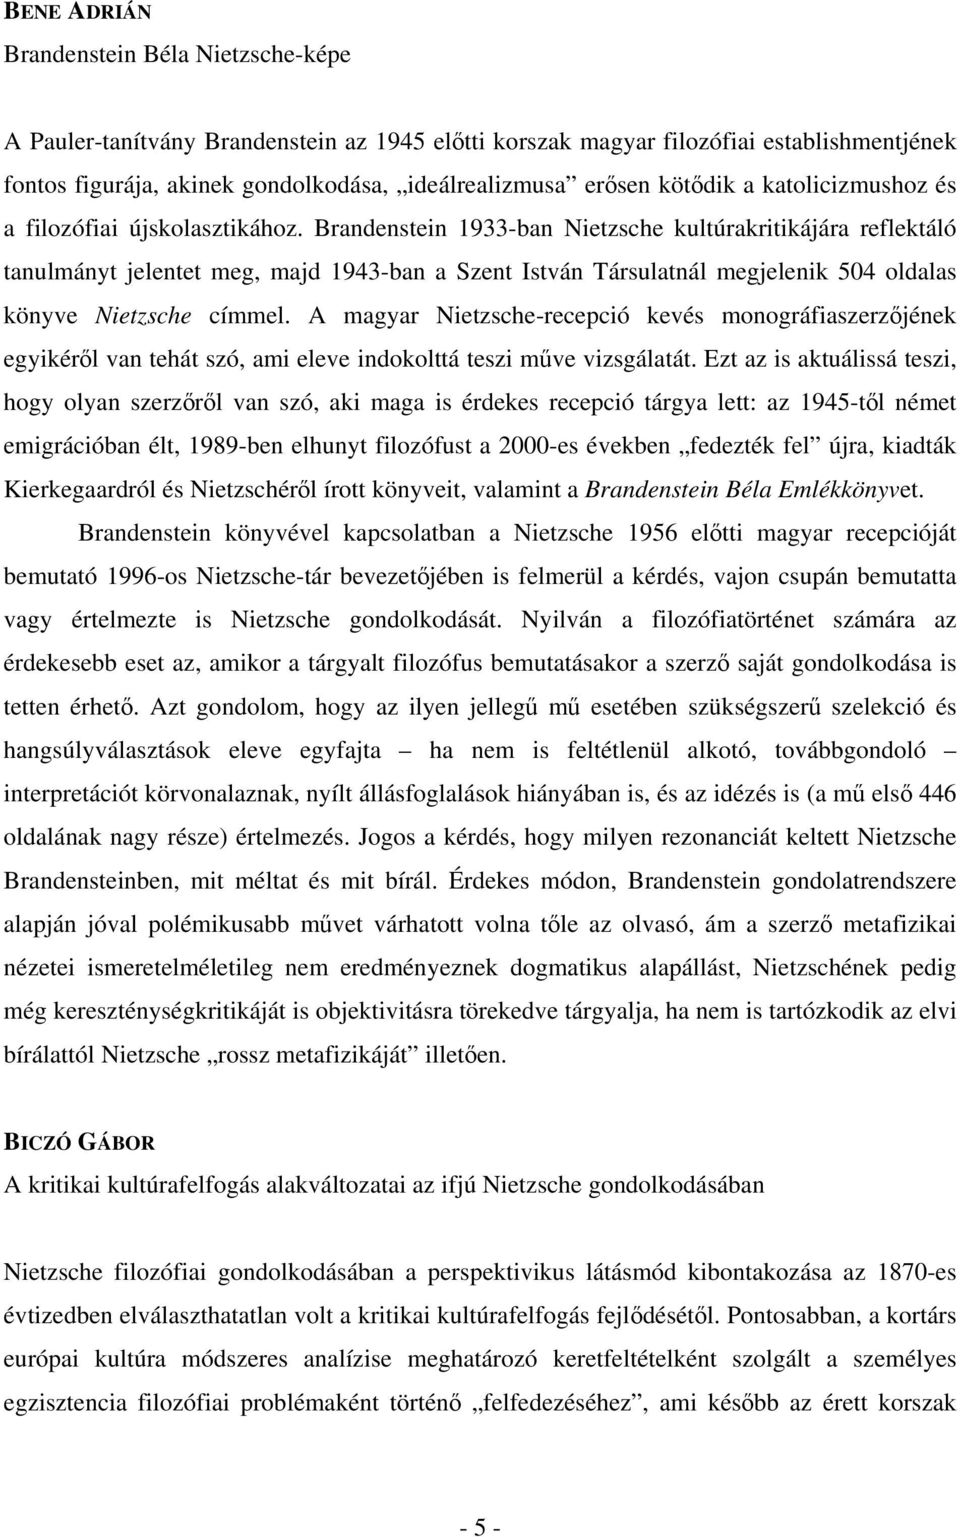 Brandenstein 1933-ban Nietzsche kultúrakritikájára reflektáló tanulmányt jelentet meg, majd 1943-ban a Szent István Társulatnál megjelenik 504 oldalas könyve Nietzsche címmel.